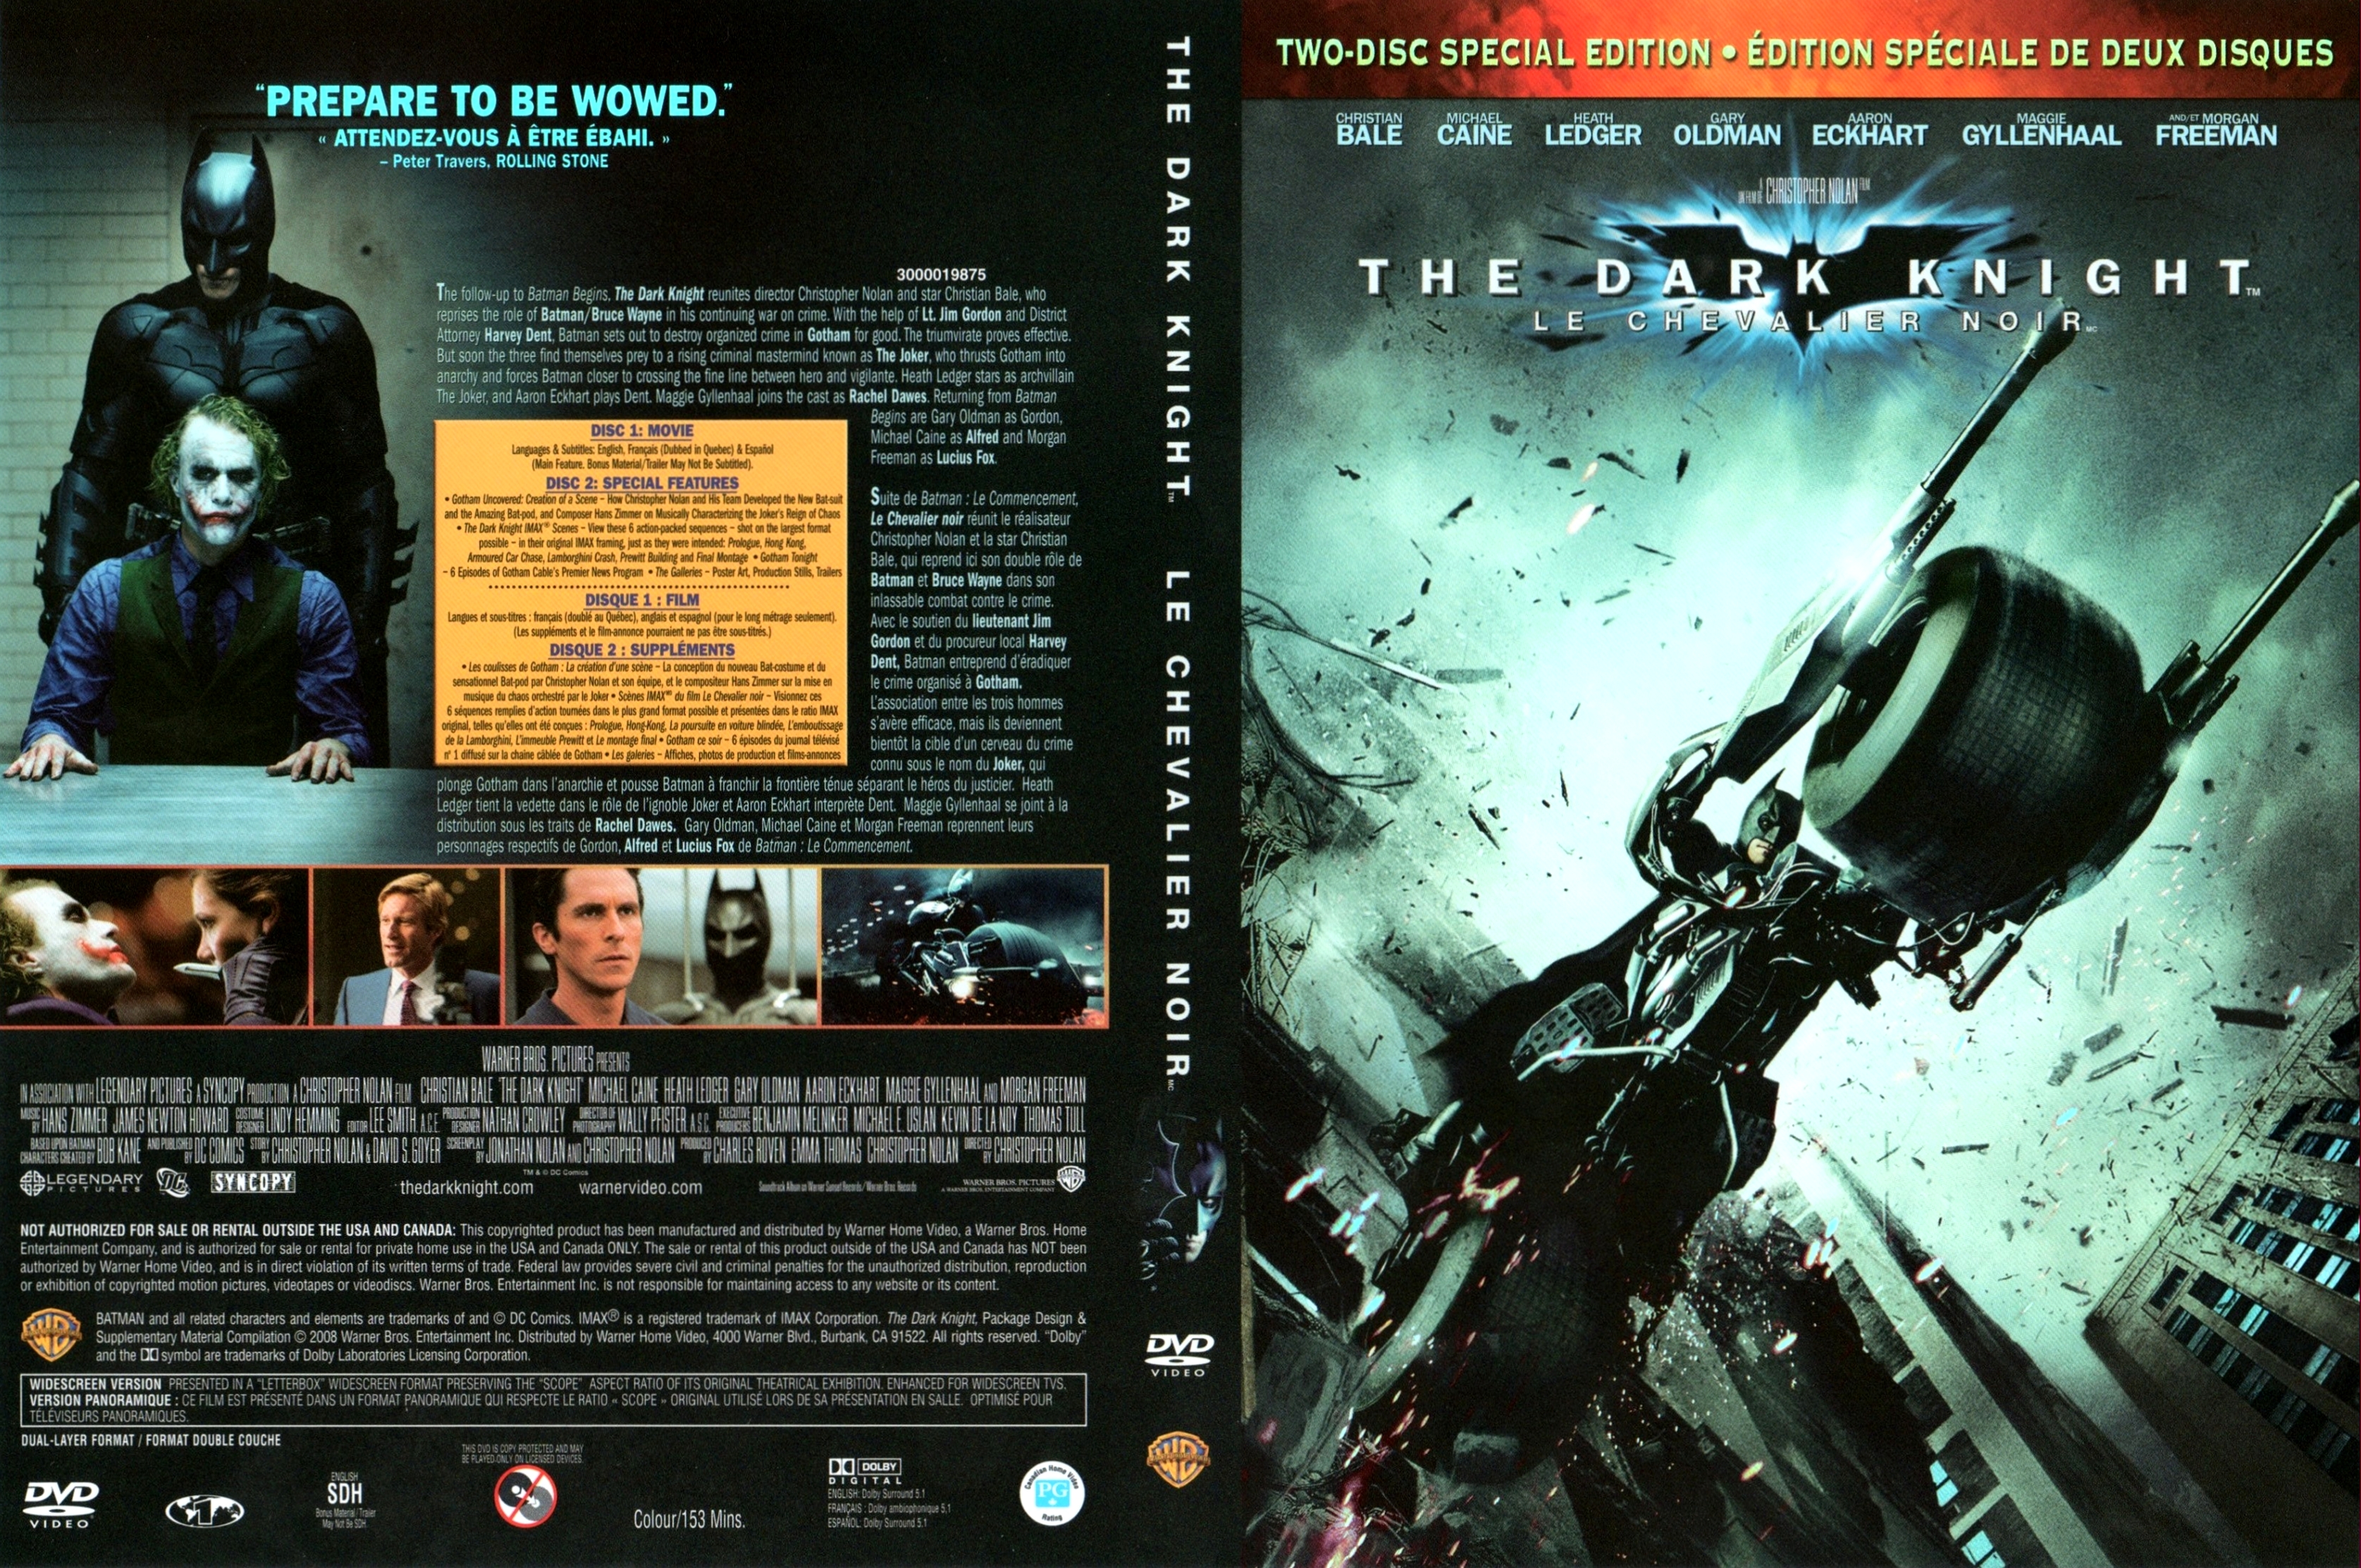 Jaquette DVD Batman the dark knight Zone 1 v3